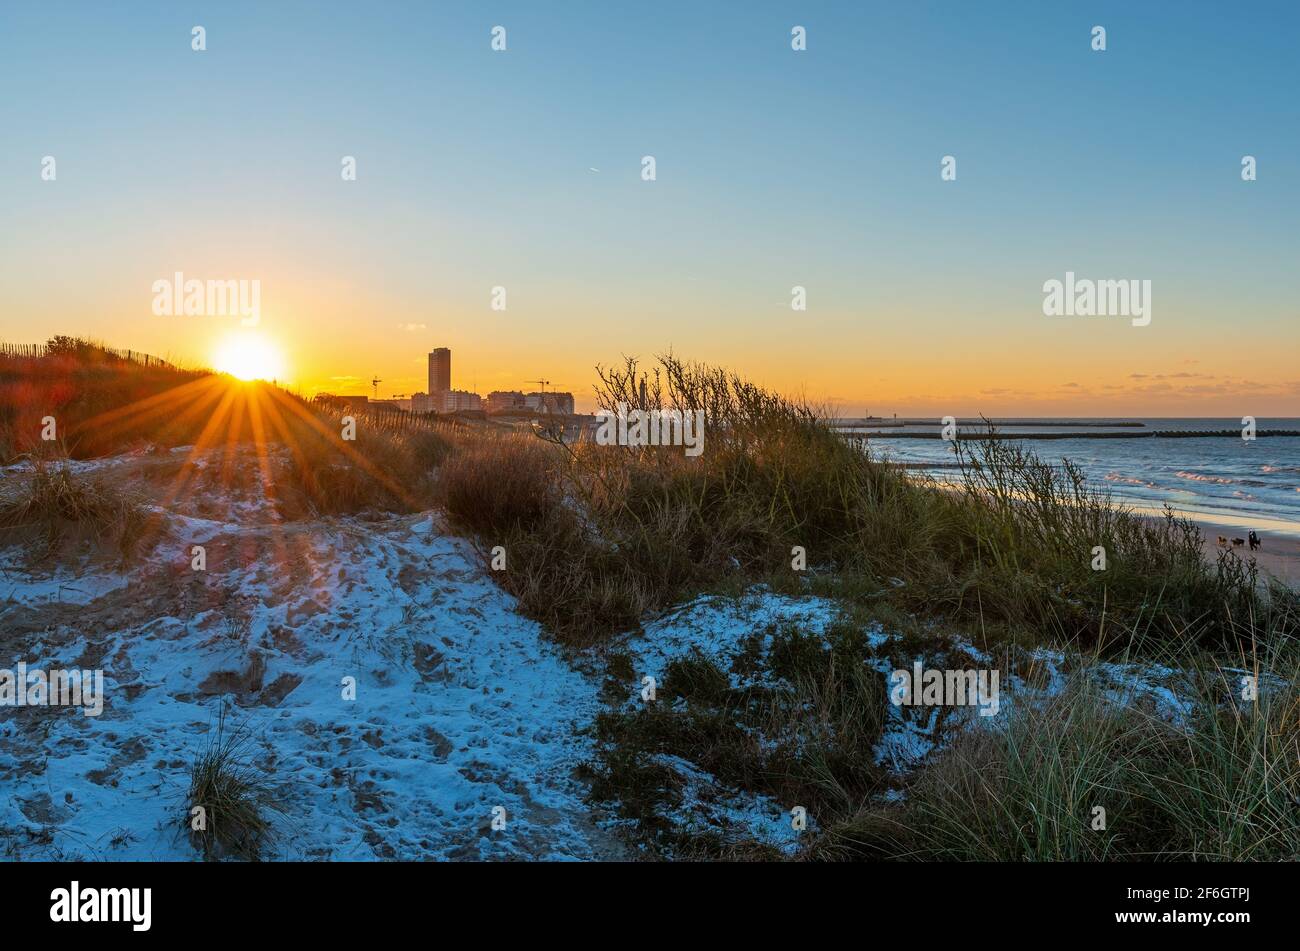 Oostende (Ostende) dunes de sable coucher de soleil avec neige au bord de la mer du Nord avec étoile du soleil, Flandre, Belgique. Banque D'Images